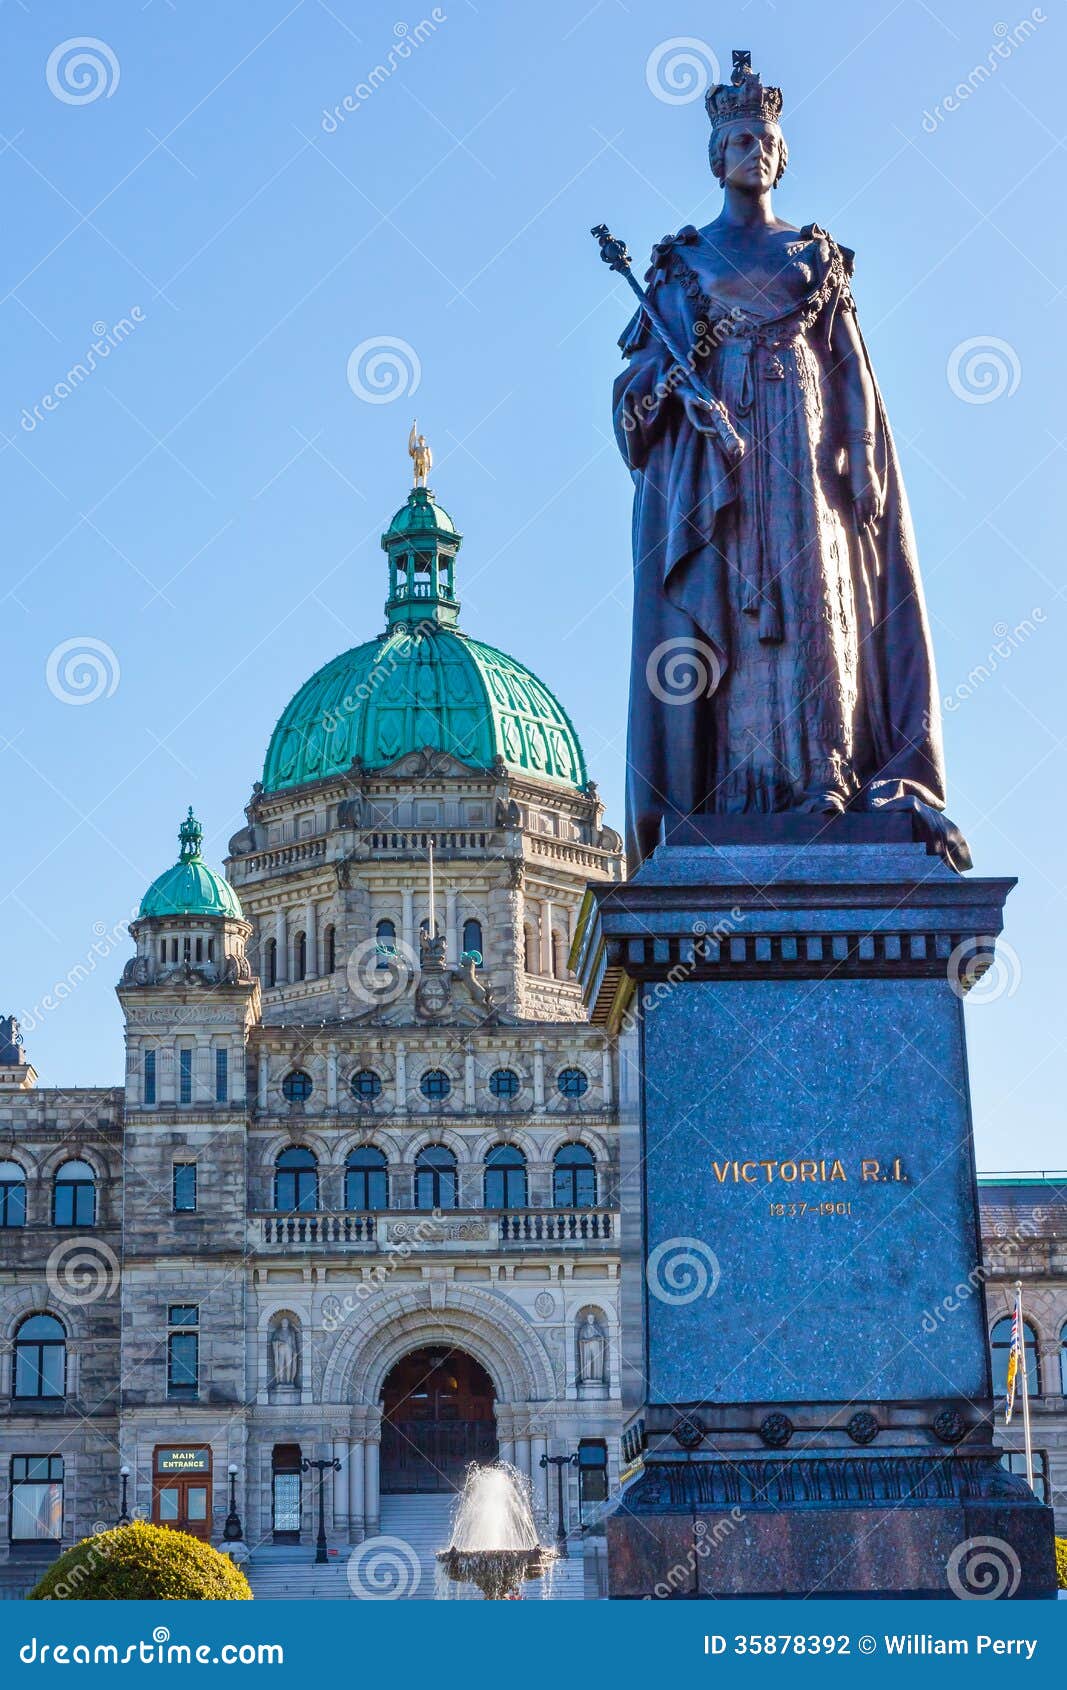 legislative-buildiing-queen-statue-victoria-canada-provincial-capital-parliament-building-british-columbia-gold-top-dome-35878392.jpg